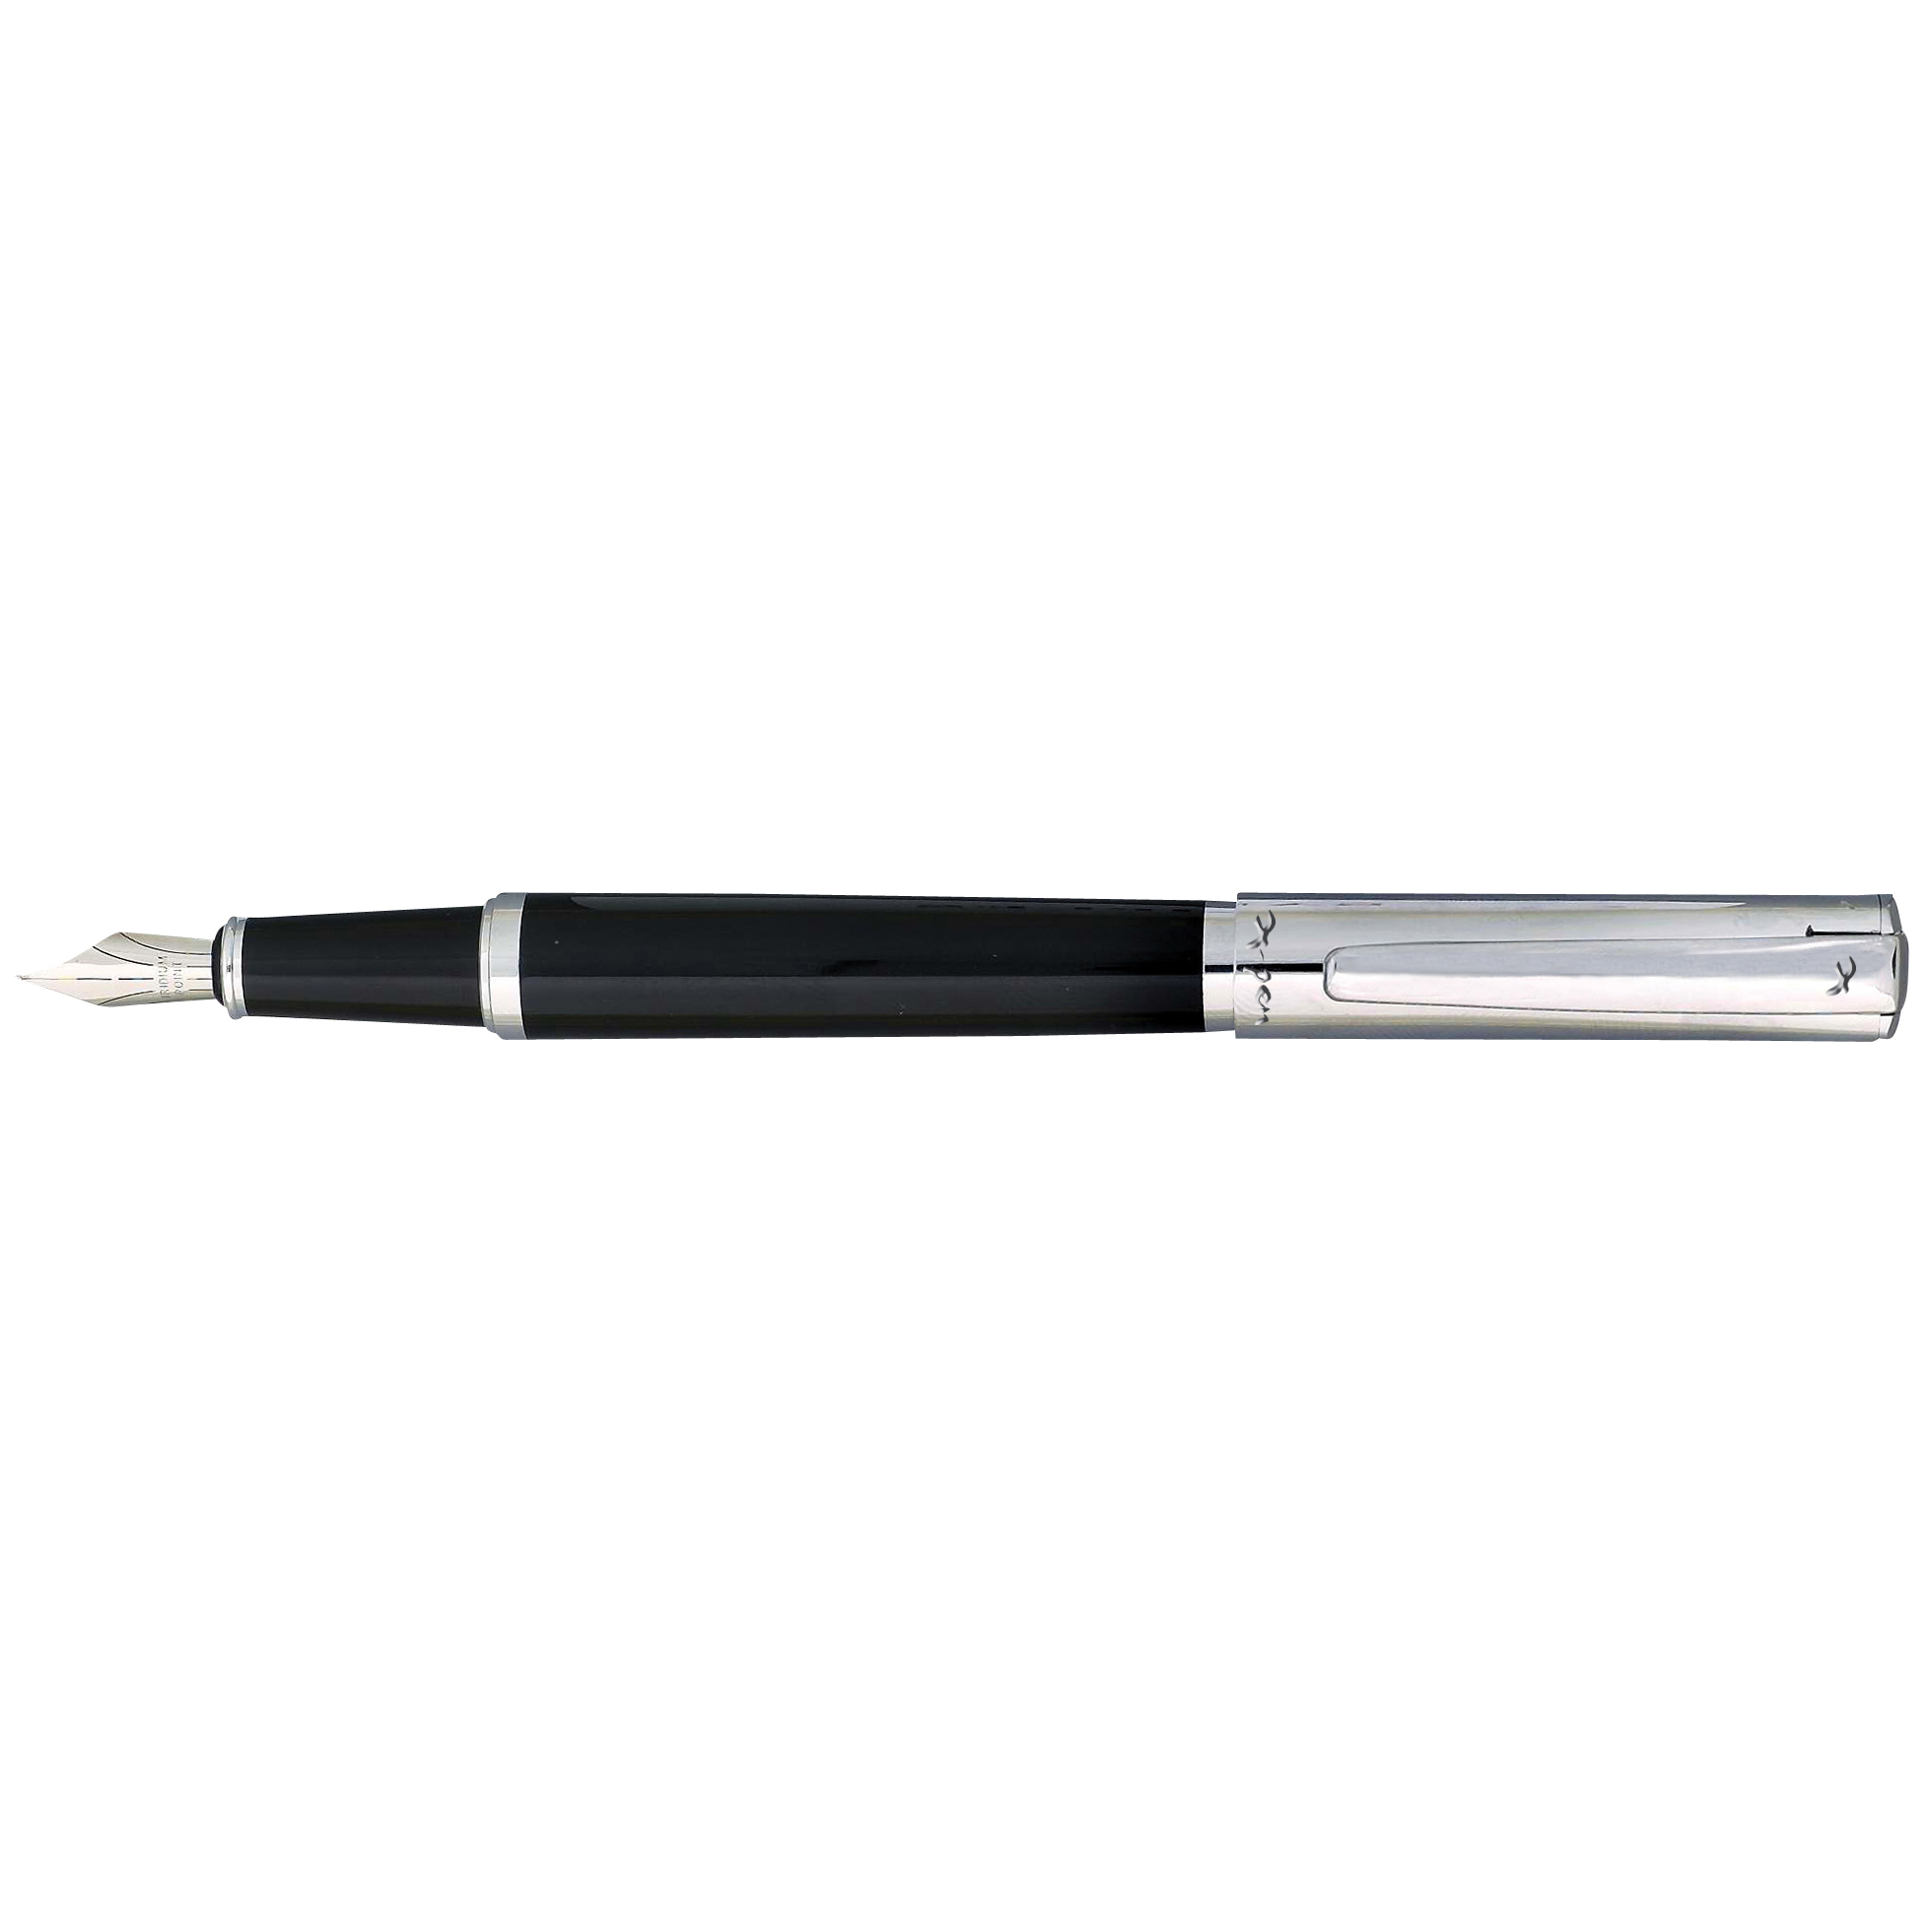 עט X-Pen  פרדייס Paradise צפורן.
גוף מעוצב דמוי עור מסדרת עטי יוקרה X-PEN
בעל שטח גדול למיתוג, מומלץ חריטה או הדפסה.   